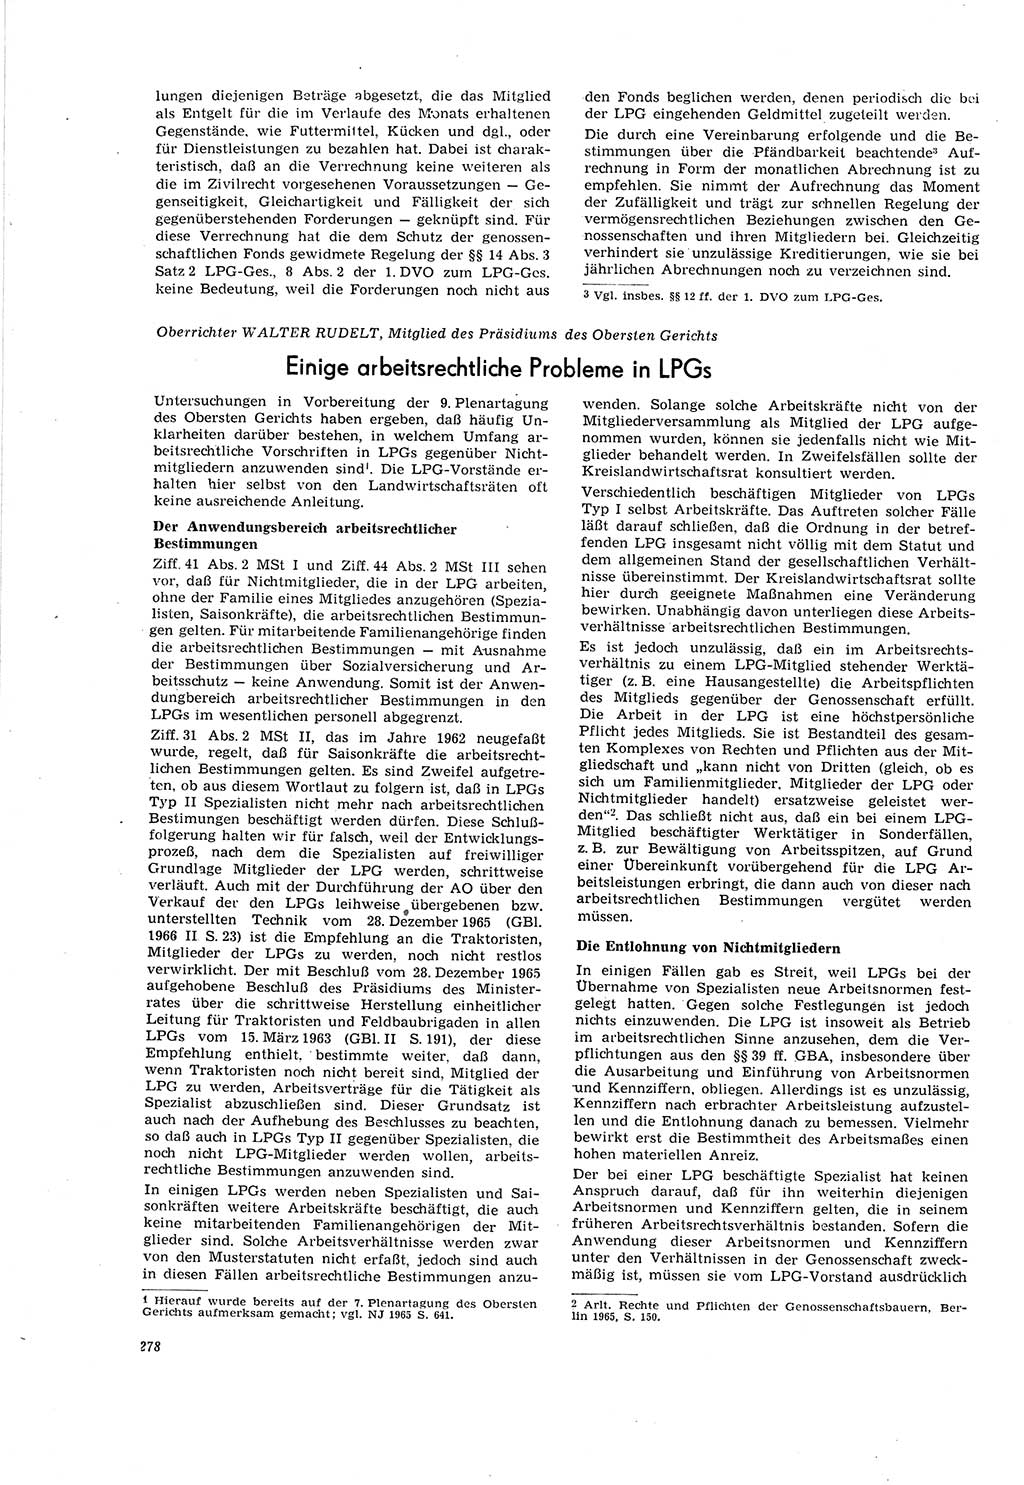 Neue Justiz (NJ), Zeitschrift für Recht und Rechtswissenschaft [Deutsche Demokratische Republik (DDR)], 20. Jahrgang 1966, Seite 278 (NJ DDR 1966, S. 278)